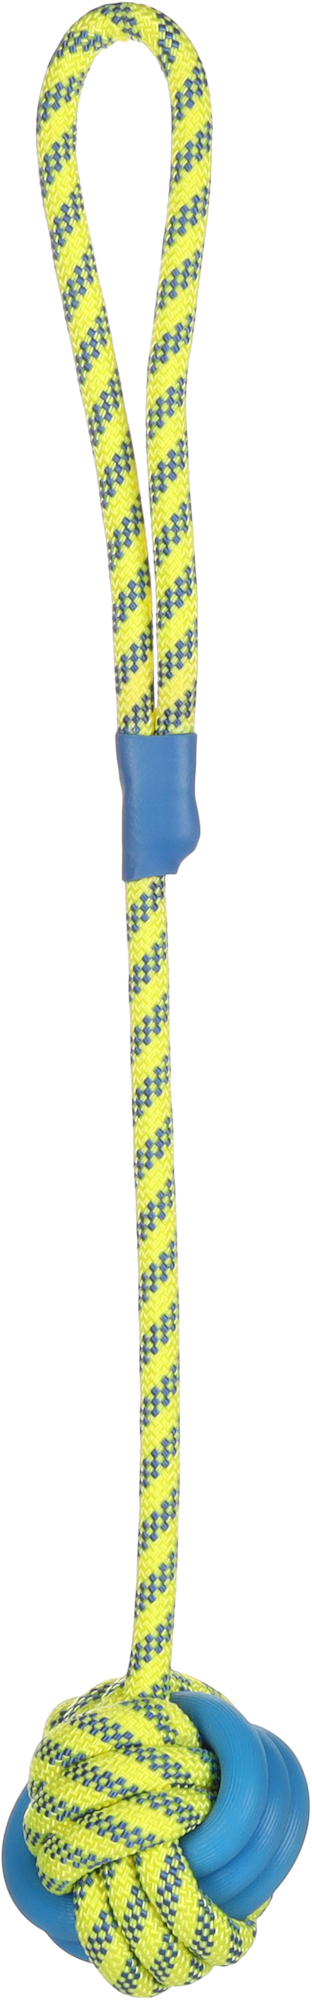 Brinquedo para cão Tofla bola + corda para puxar azul/amarelo em borracha e nylon resistente